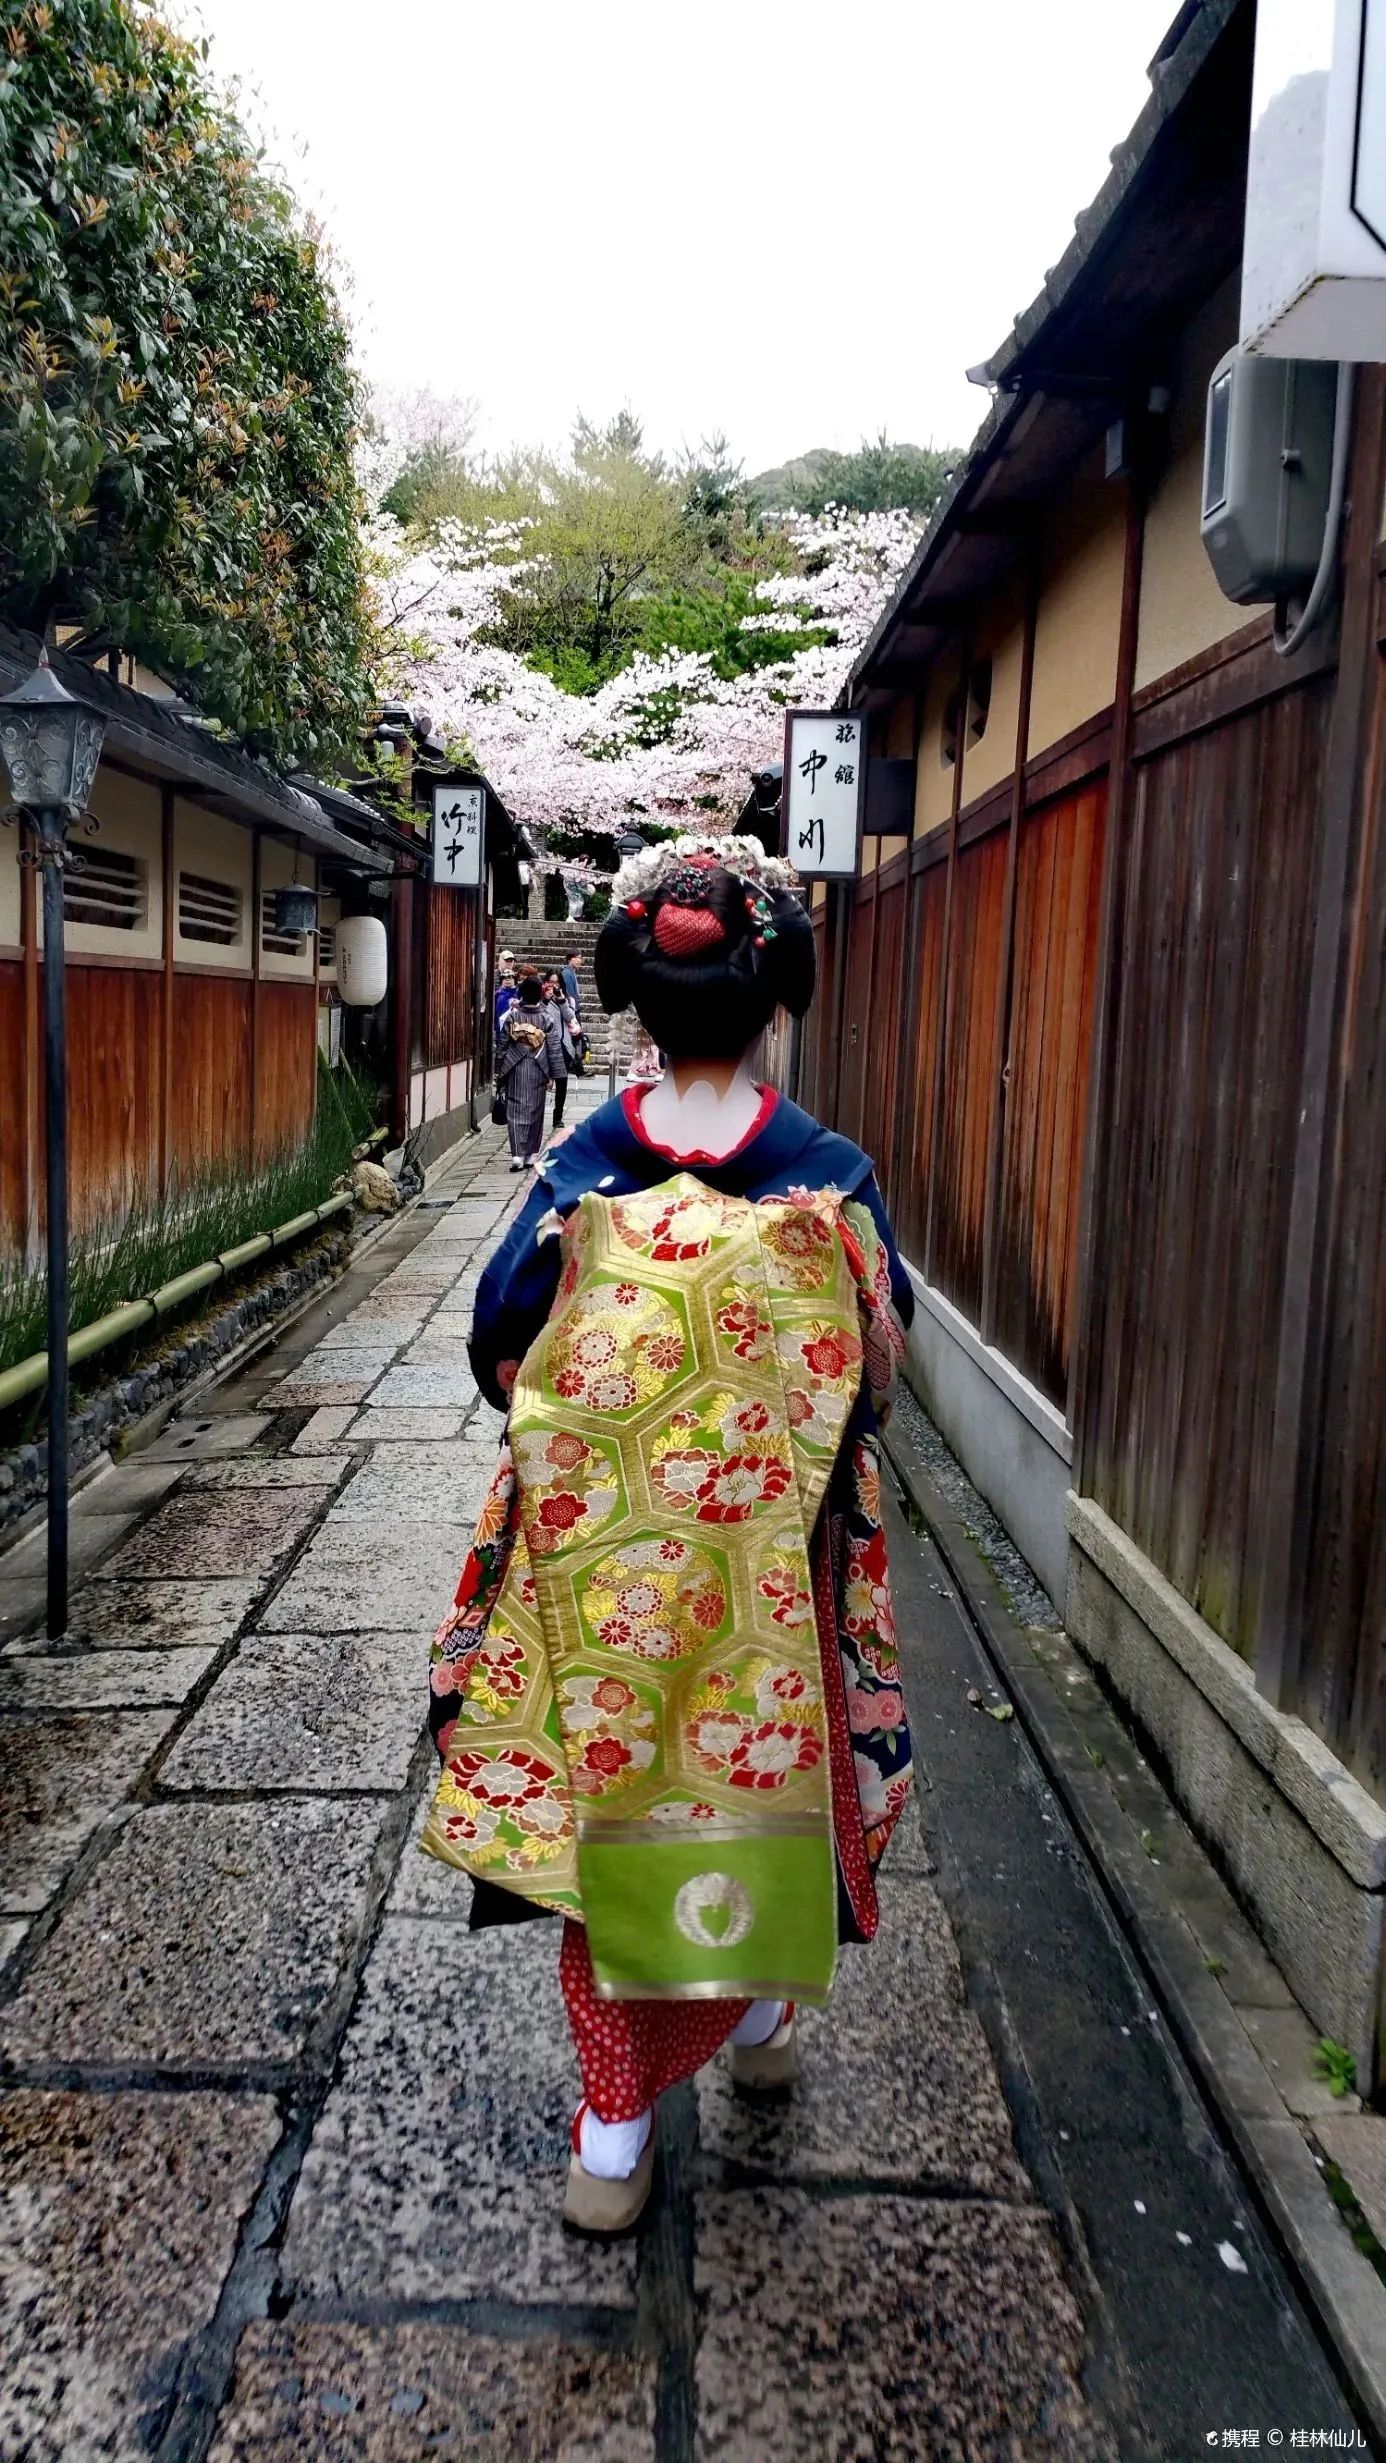 【#旅途故事】从祇园到高台寺,只因多看了你几眼